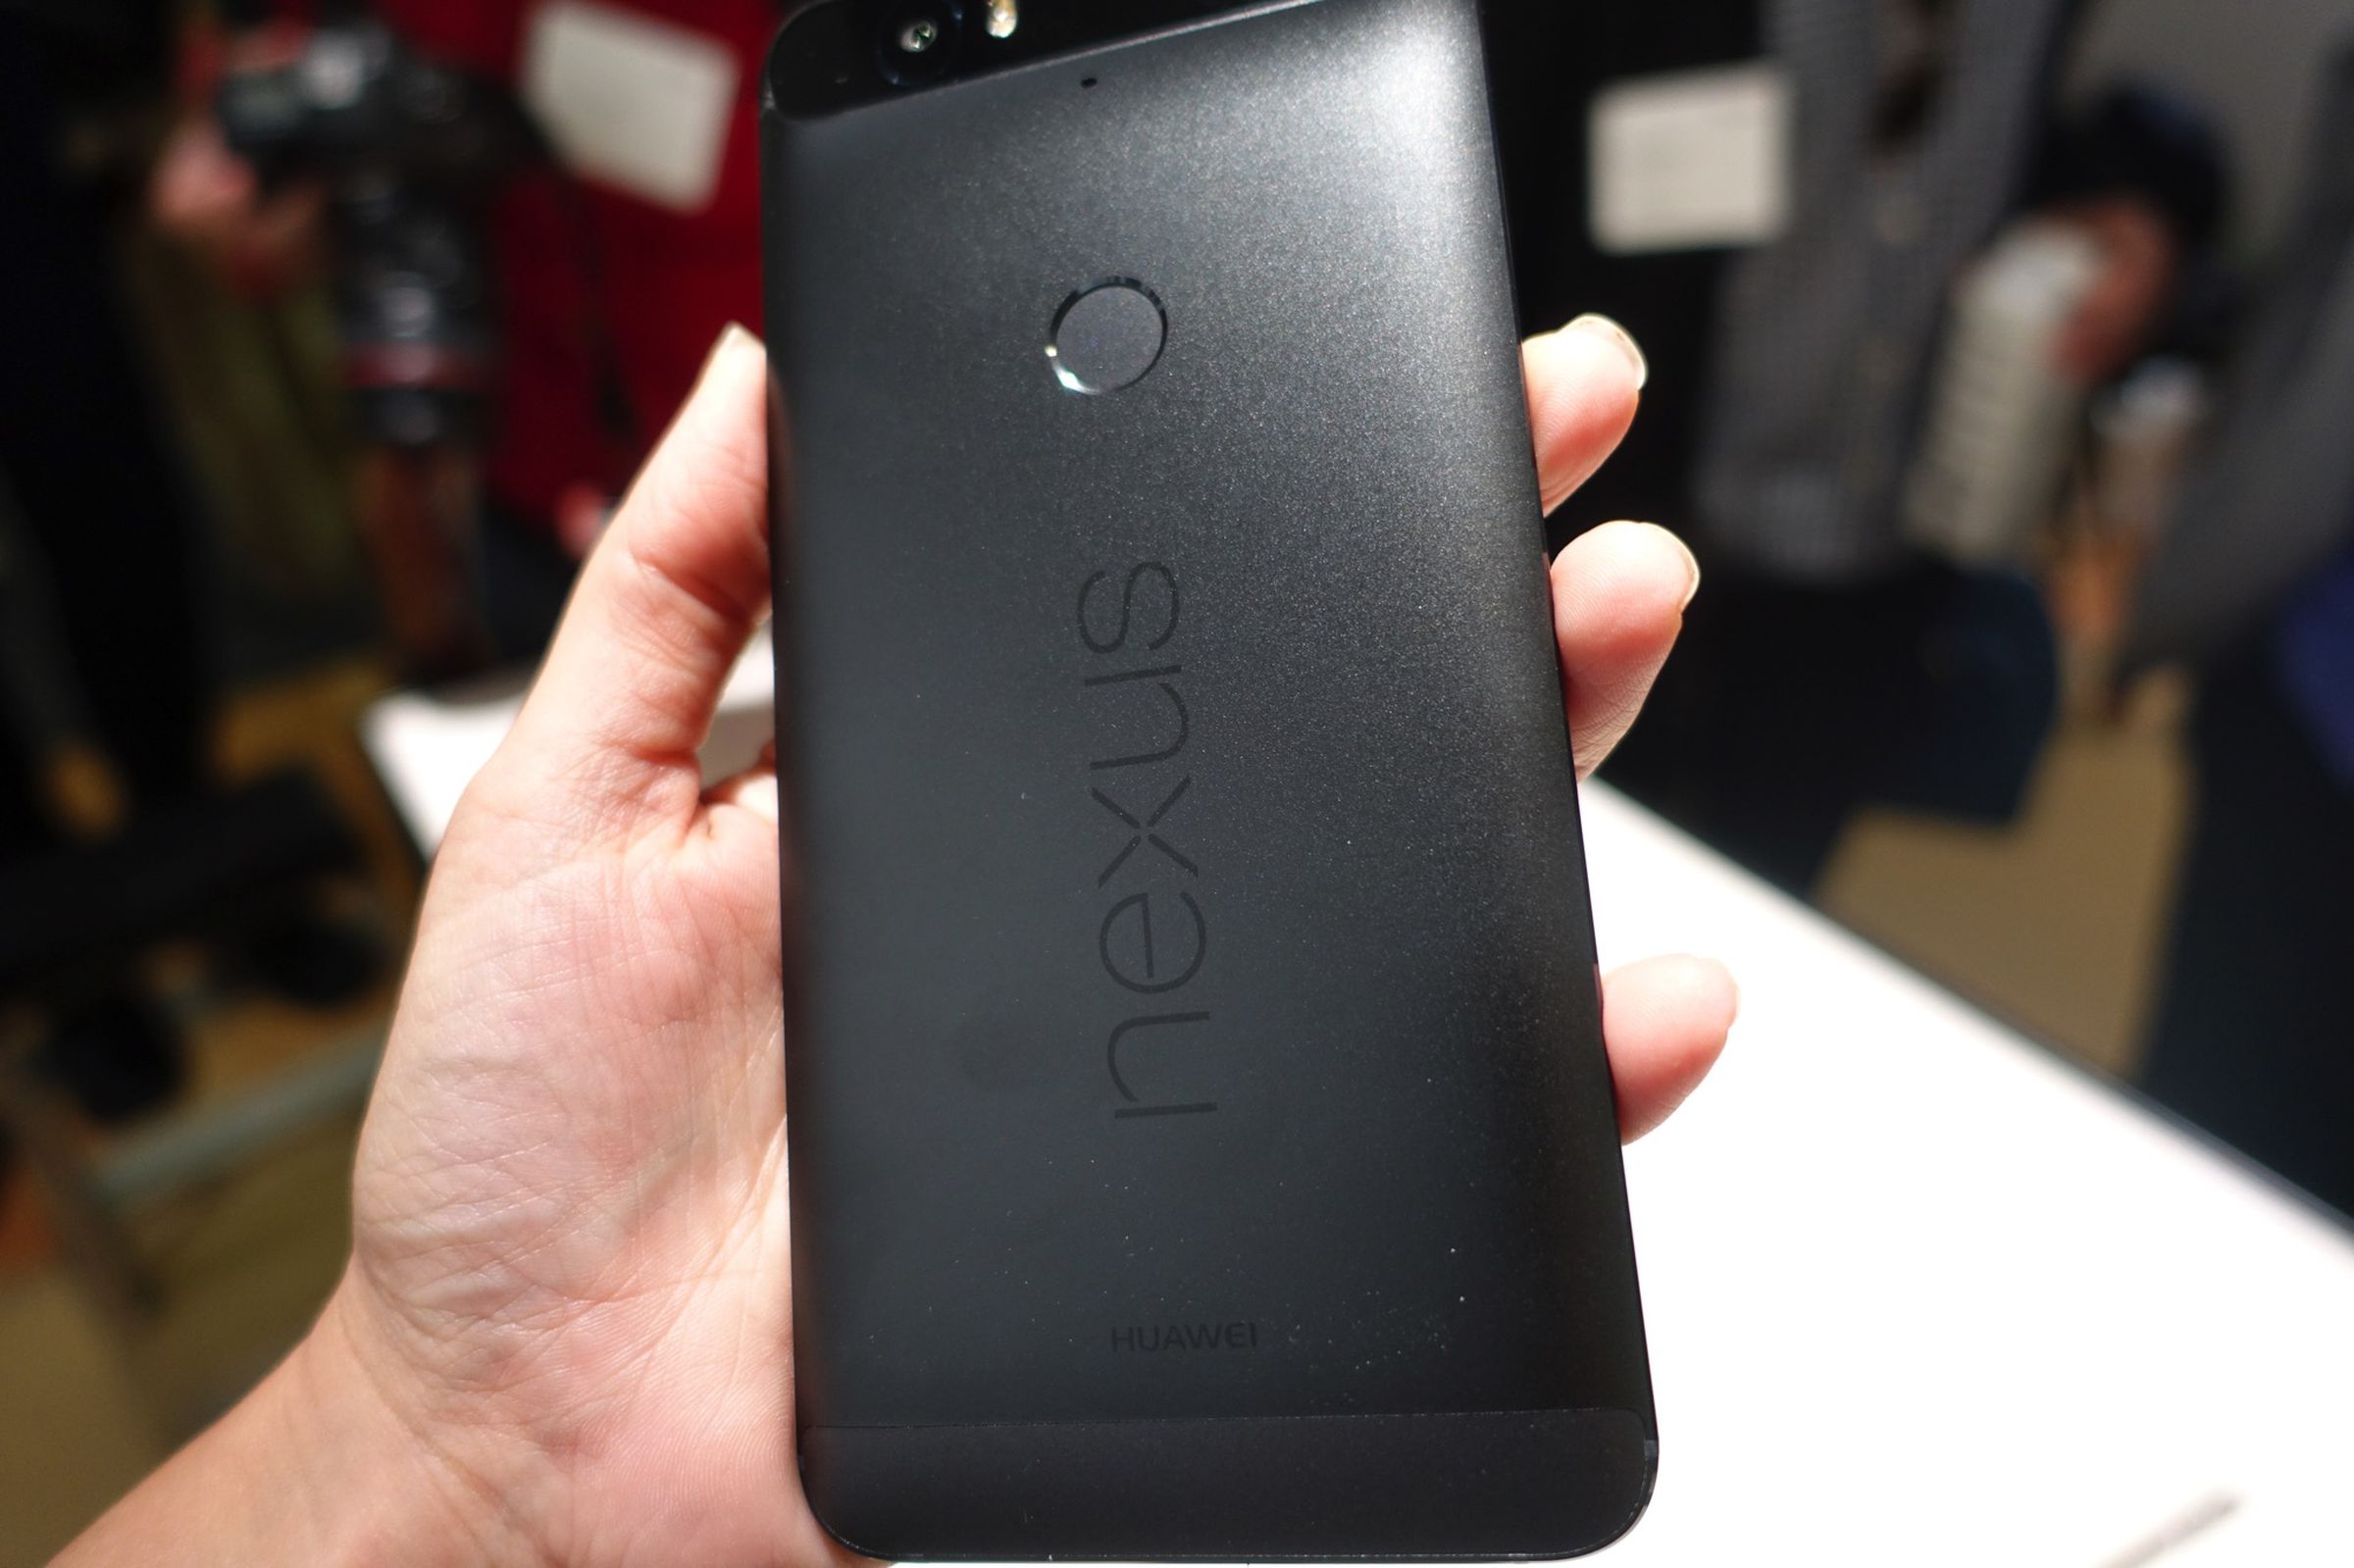 Hands on with new Nexus 6P smartphone